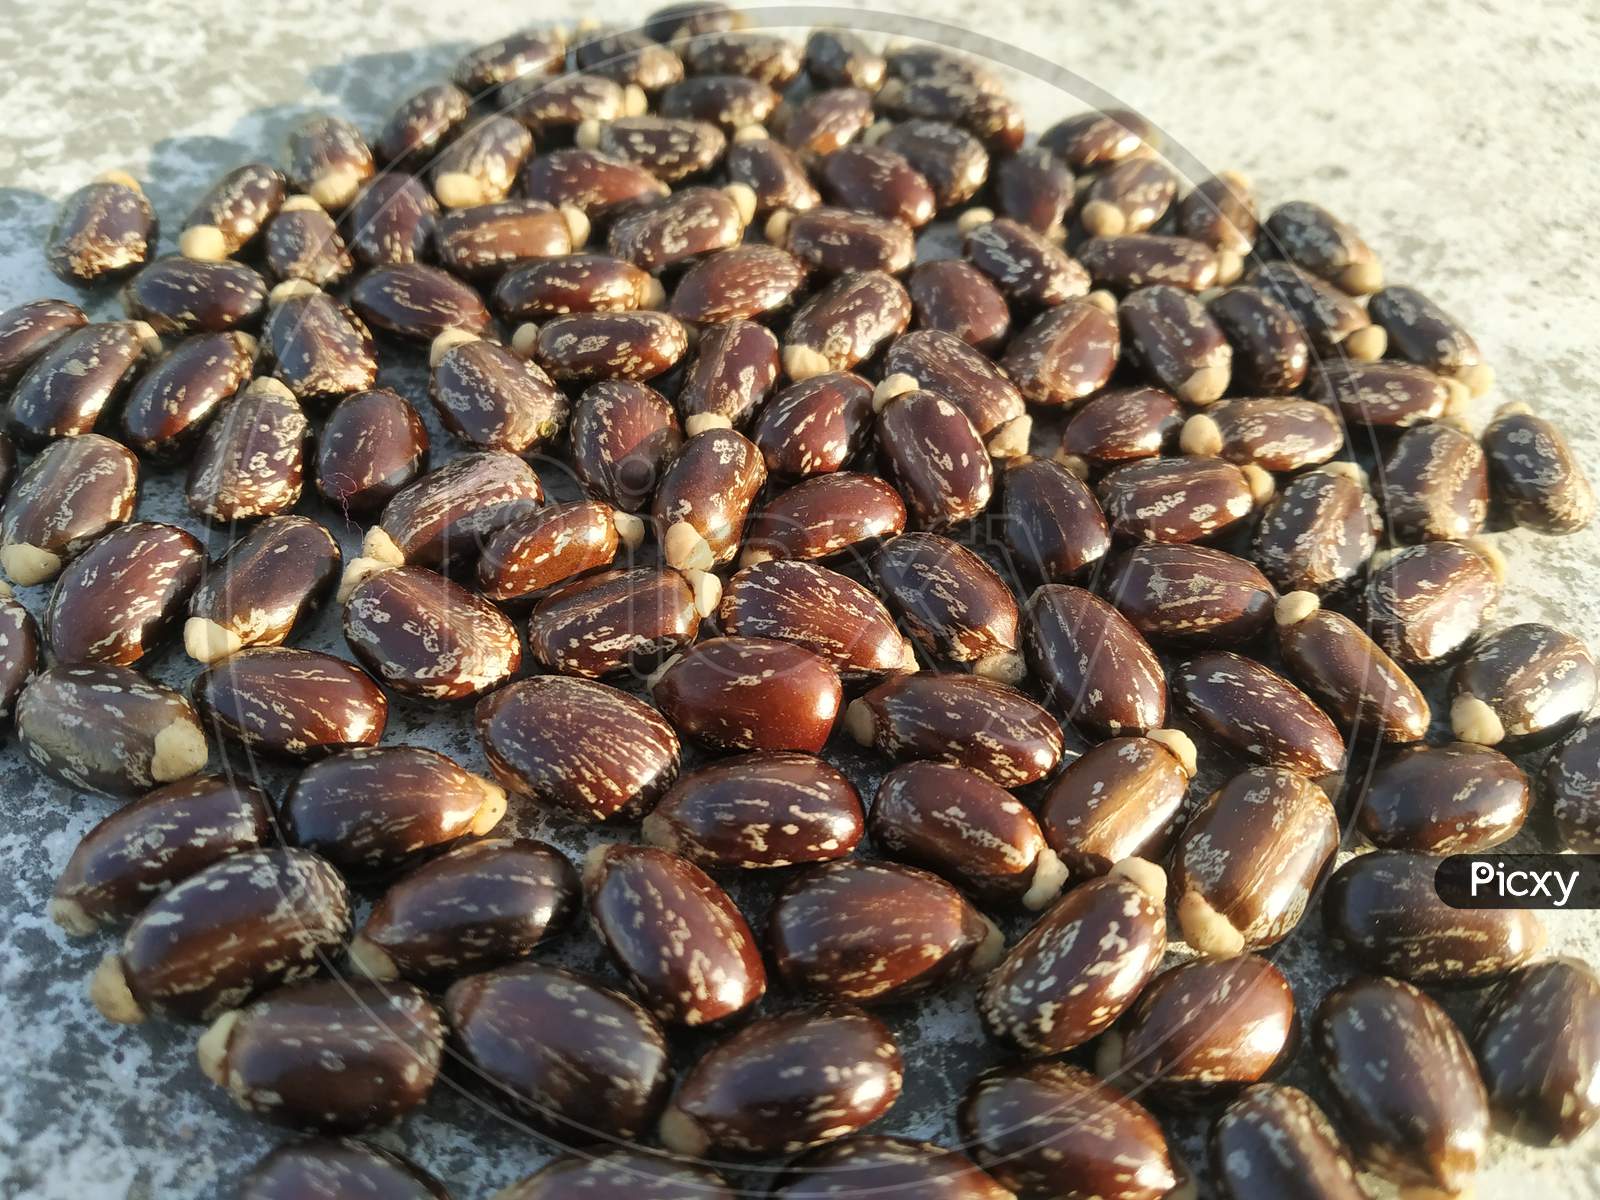 Castor oil seed